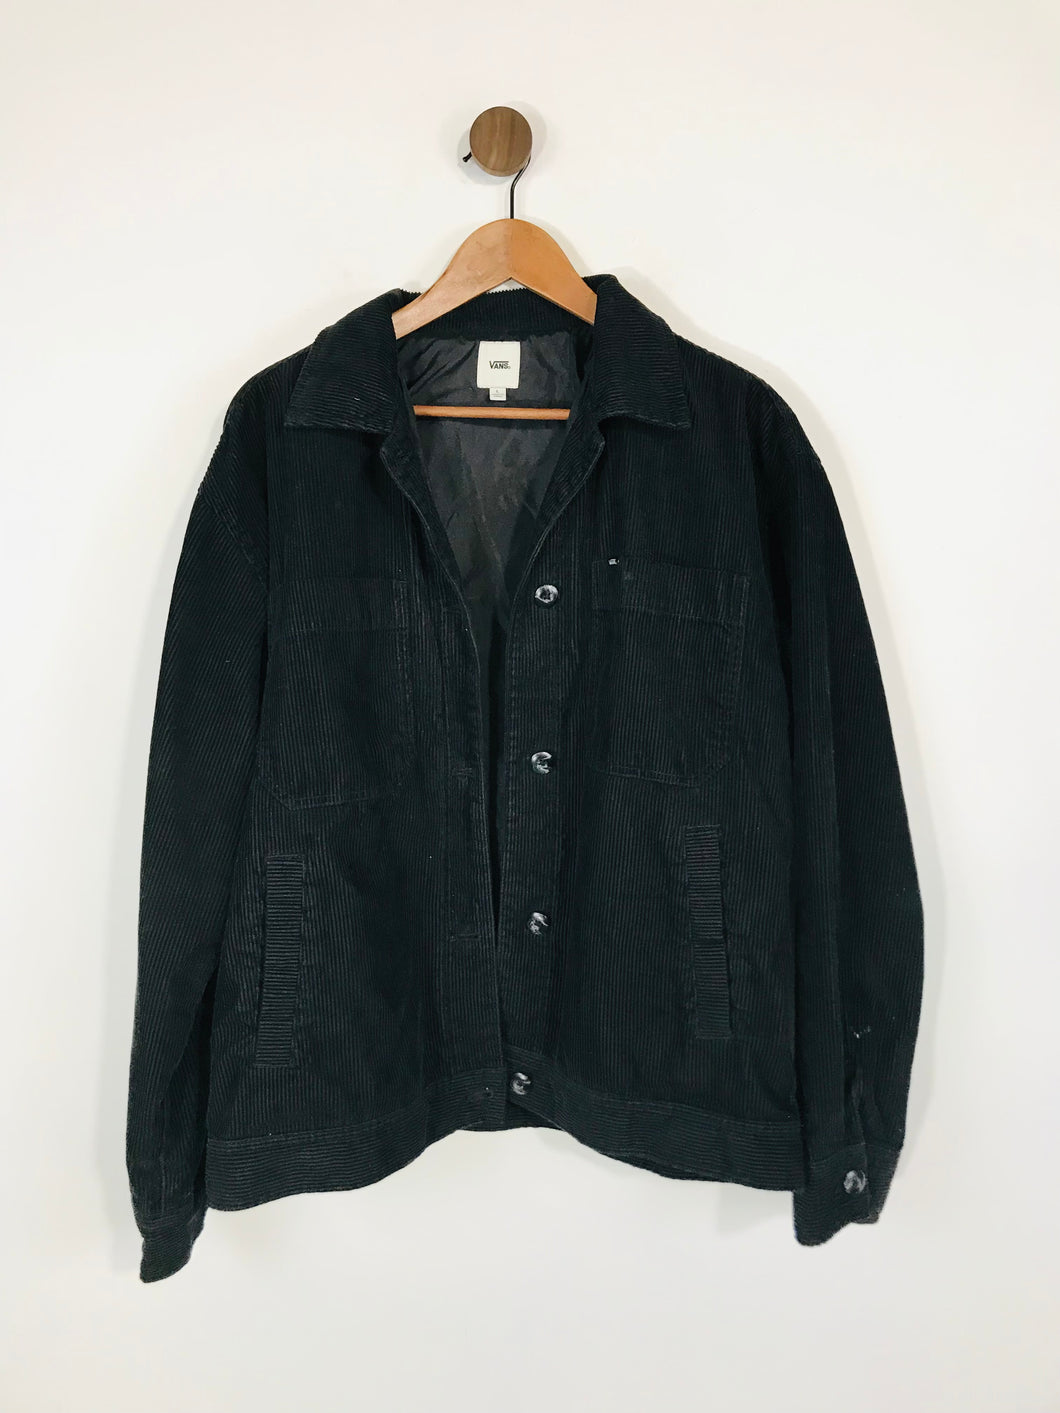 Vans Women's Corduroy Jacket Overcoat | L UK14 | Black